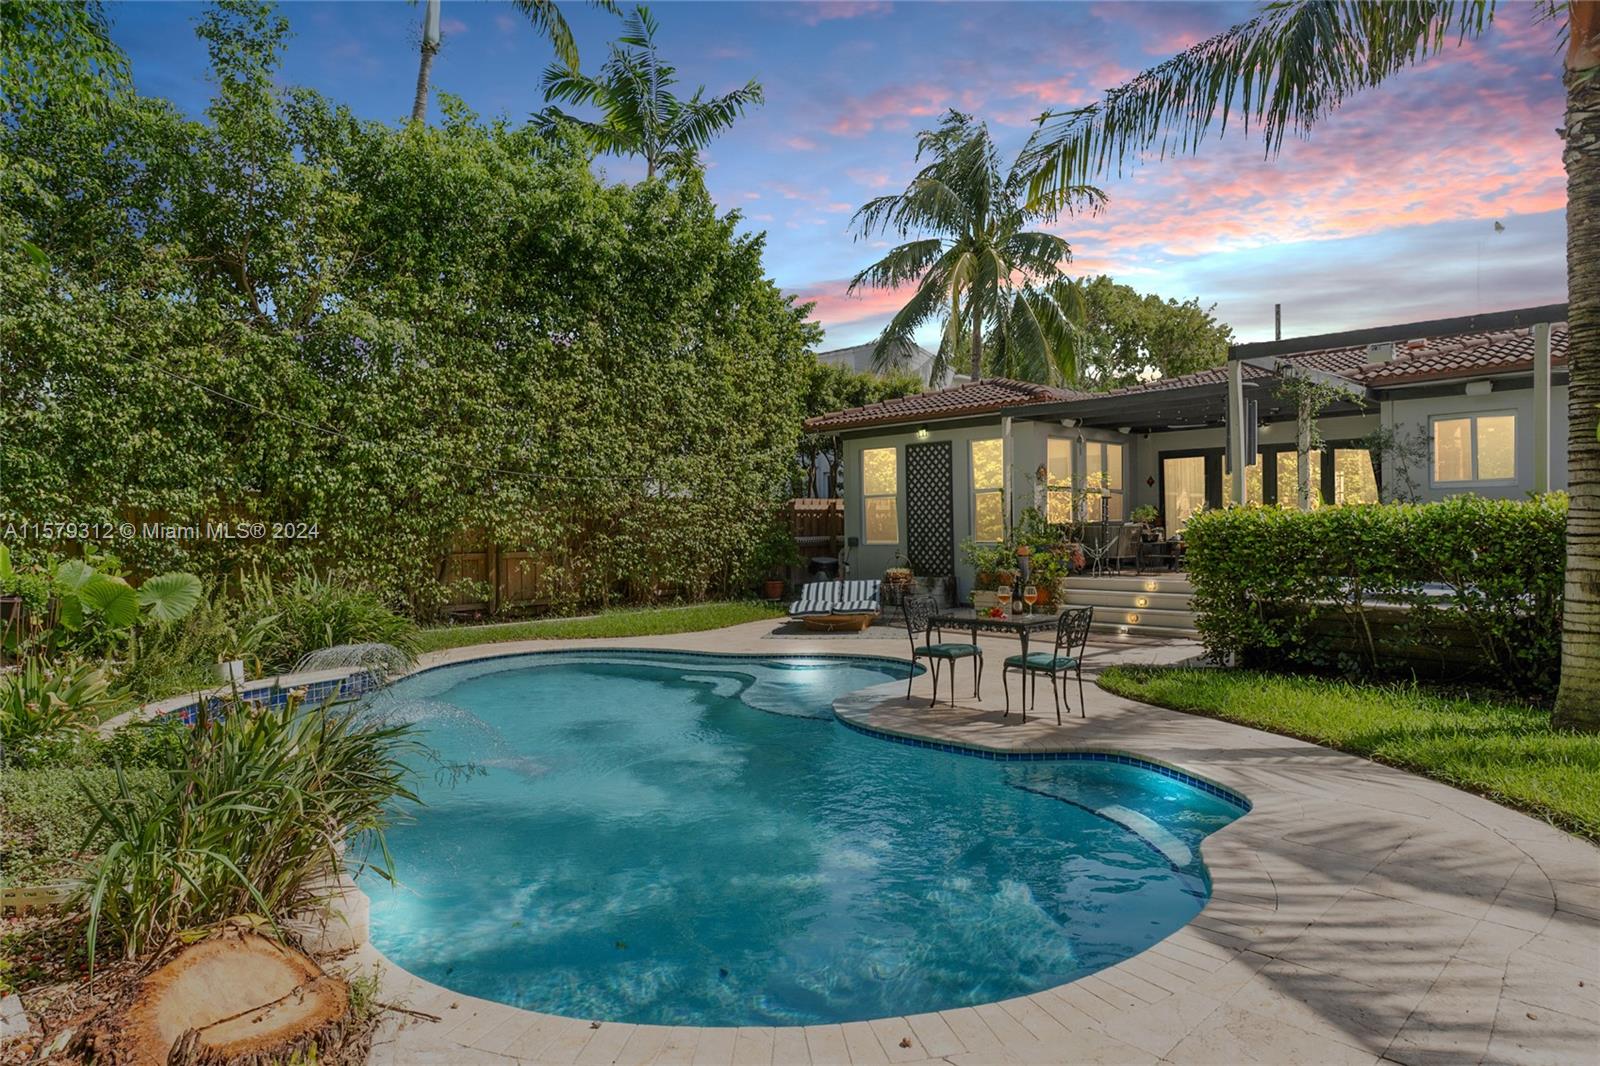 Property for Sale at 5314 Alton Rd Rd, Miami Beach, Miami-Dade County, Florida - Bedrooms: 4 
Bathrooms: 3  - $2,200,000